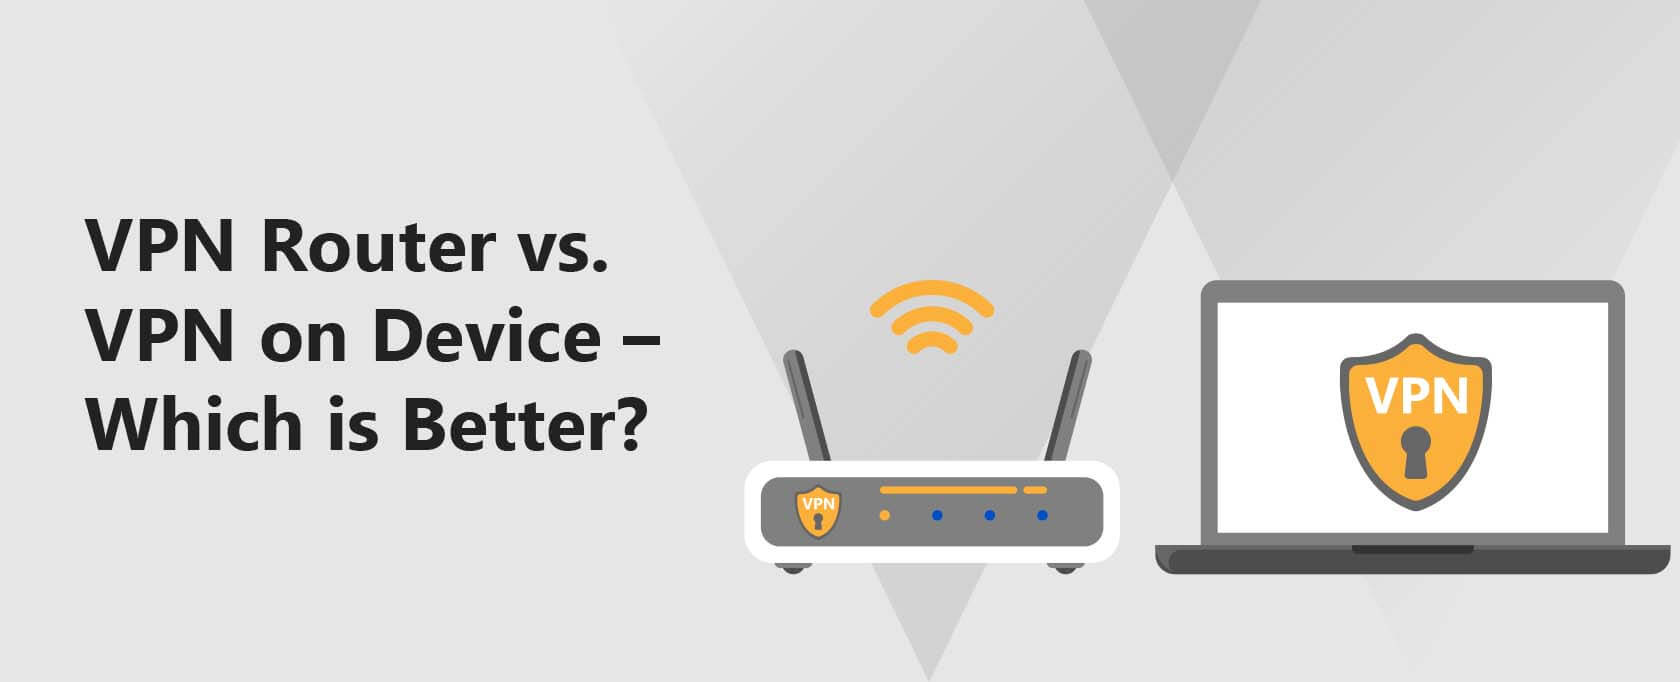 VPN Router vs. VPN on Device